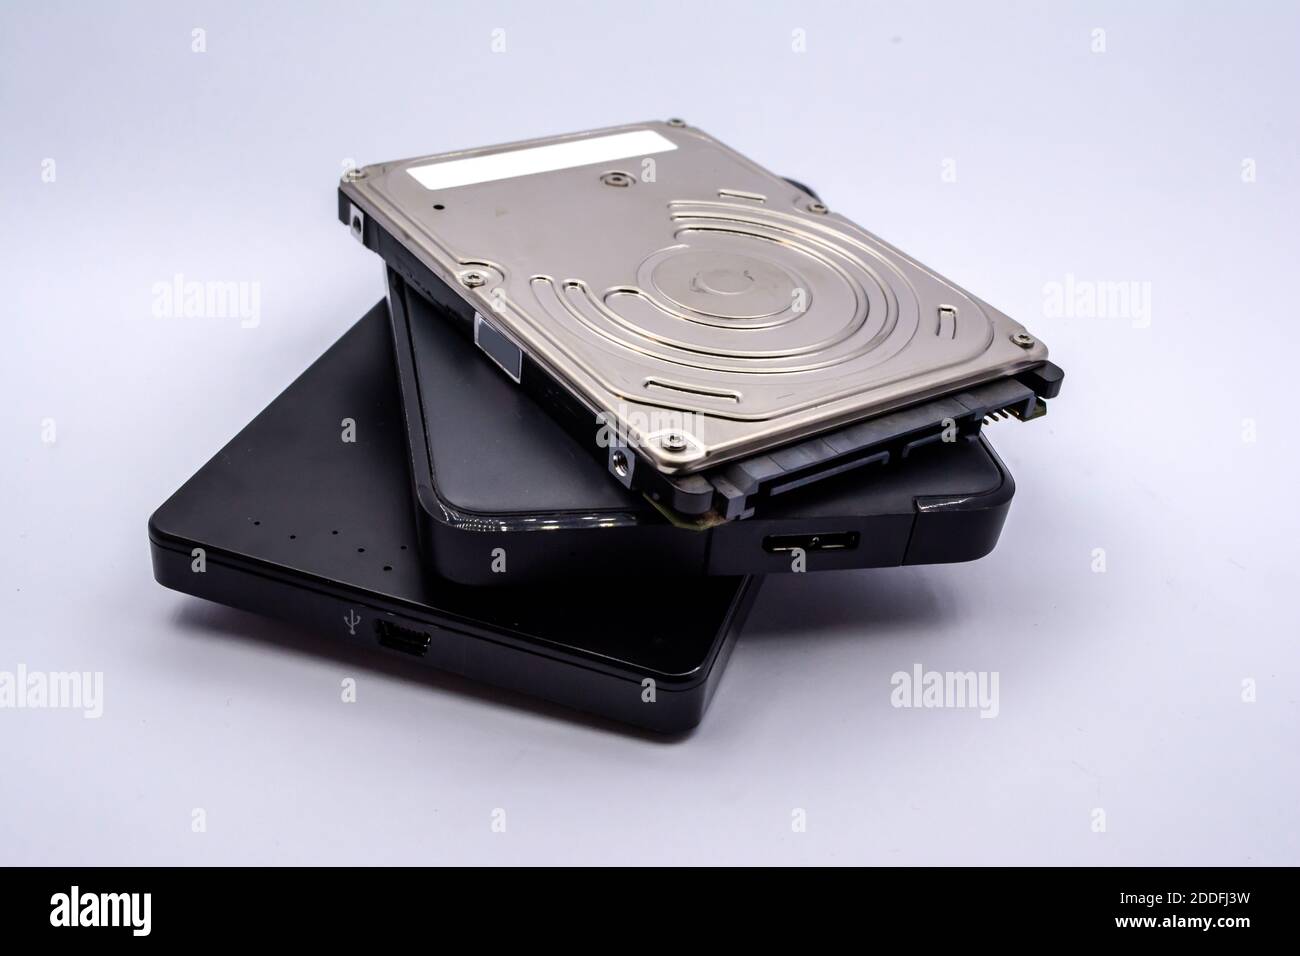 HDD (disco duro): Pila de unidades de disco duro externas e internas para portátiles aisladas sobre fondo blanco. Pila de unidades de disco duro para portátiles. Foto de stock